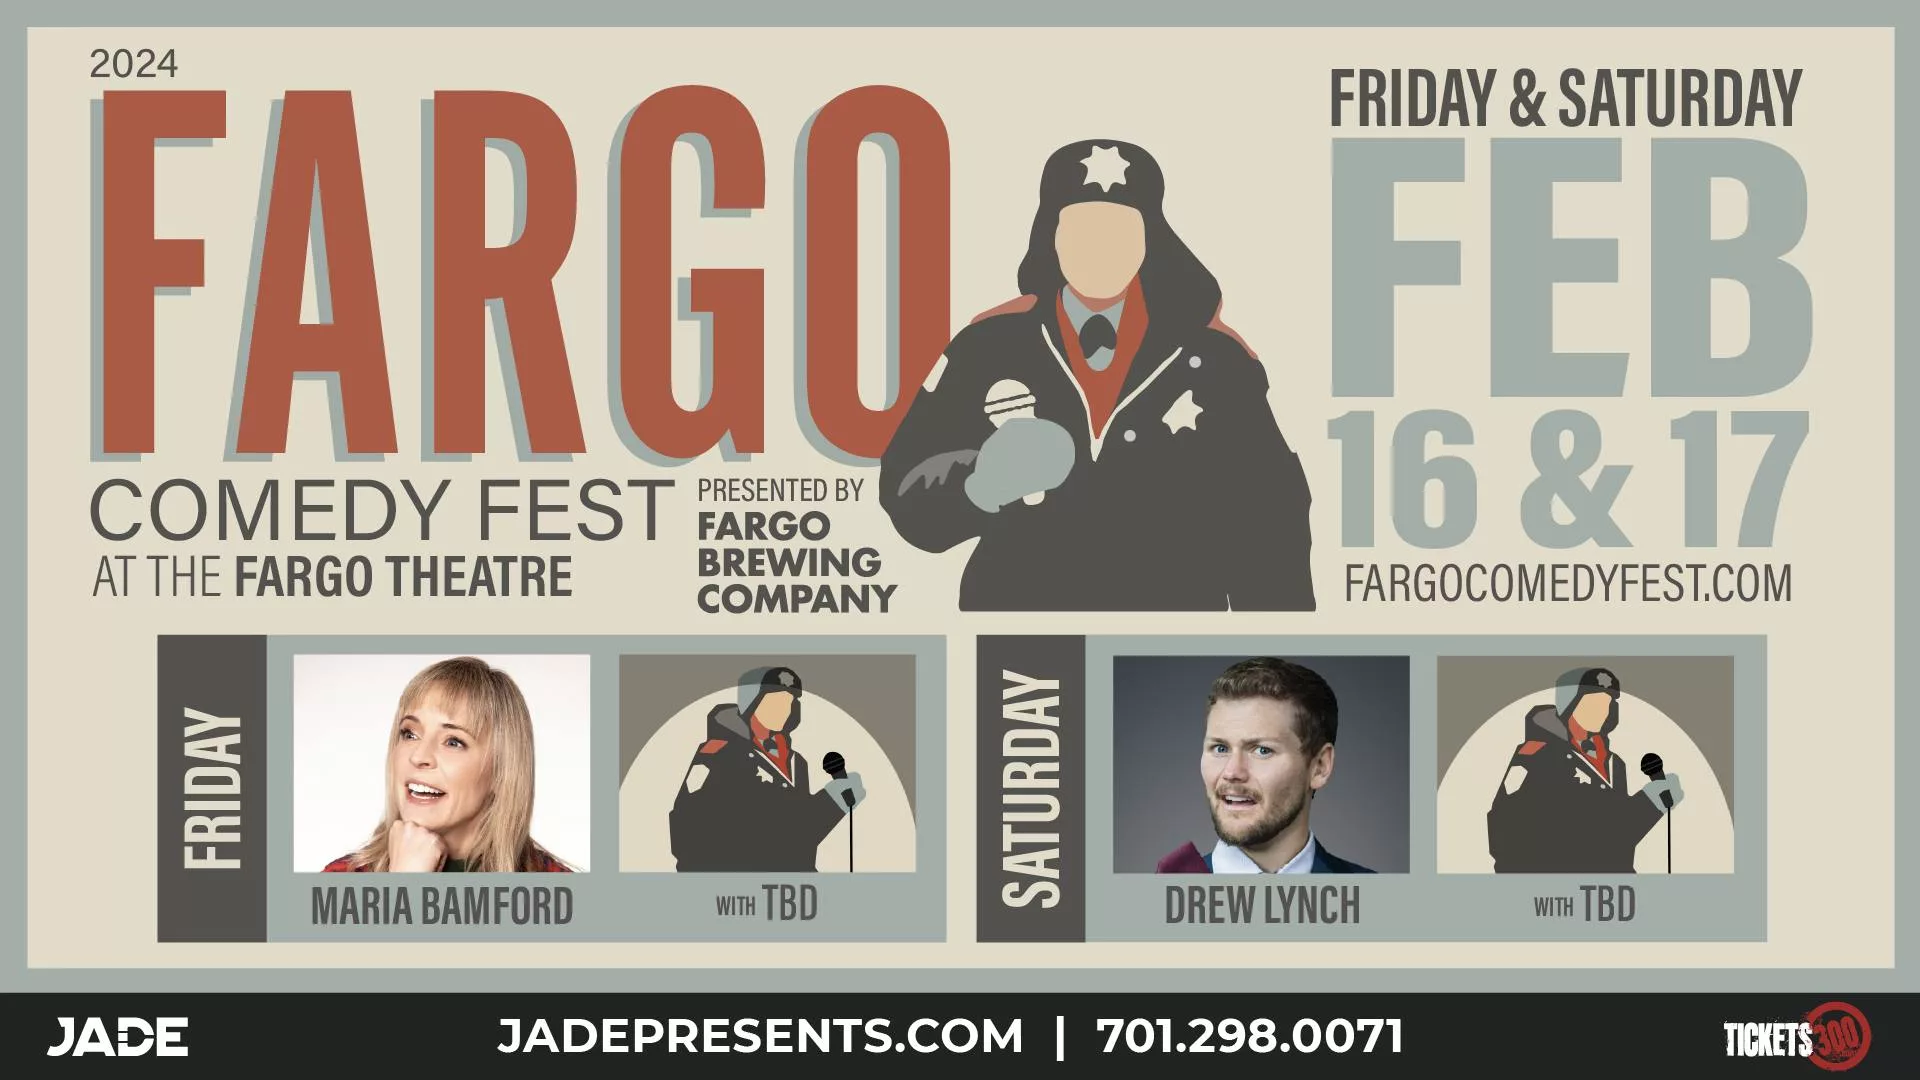 2024 Fargo Comedy Fest Fargo Underground